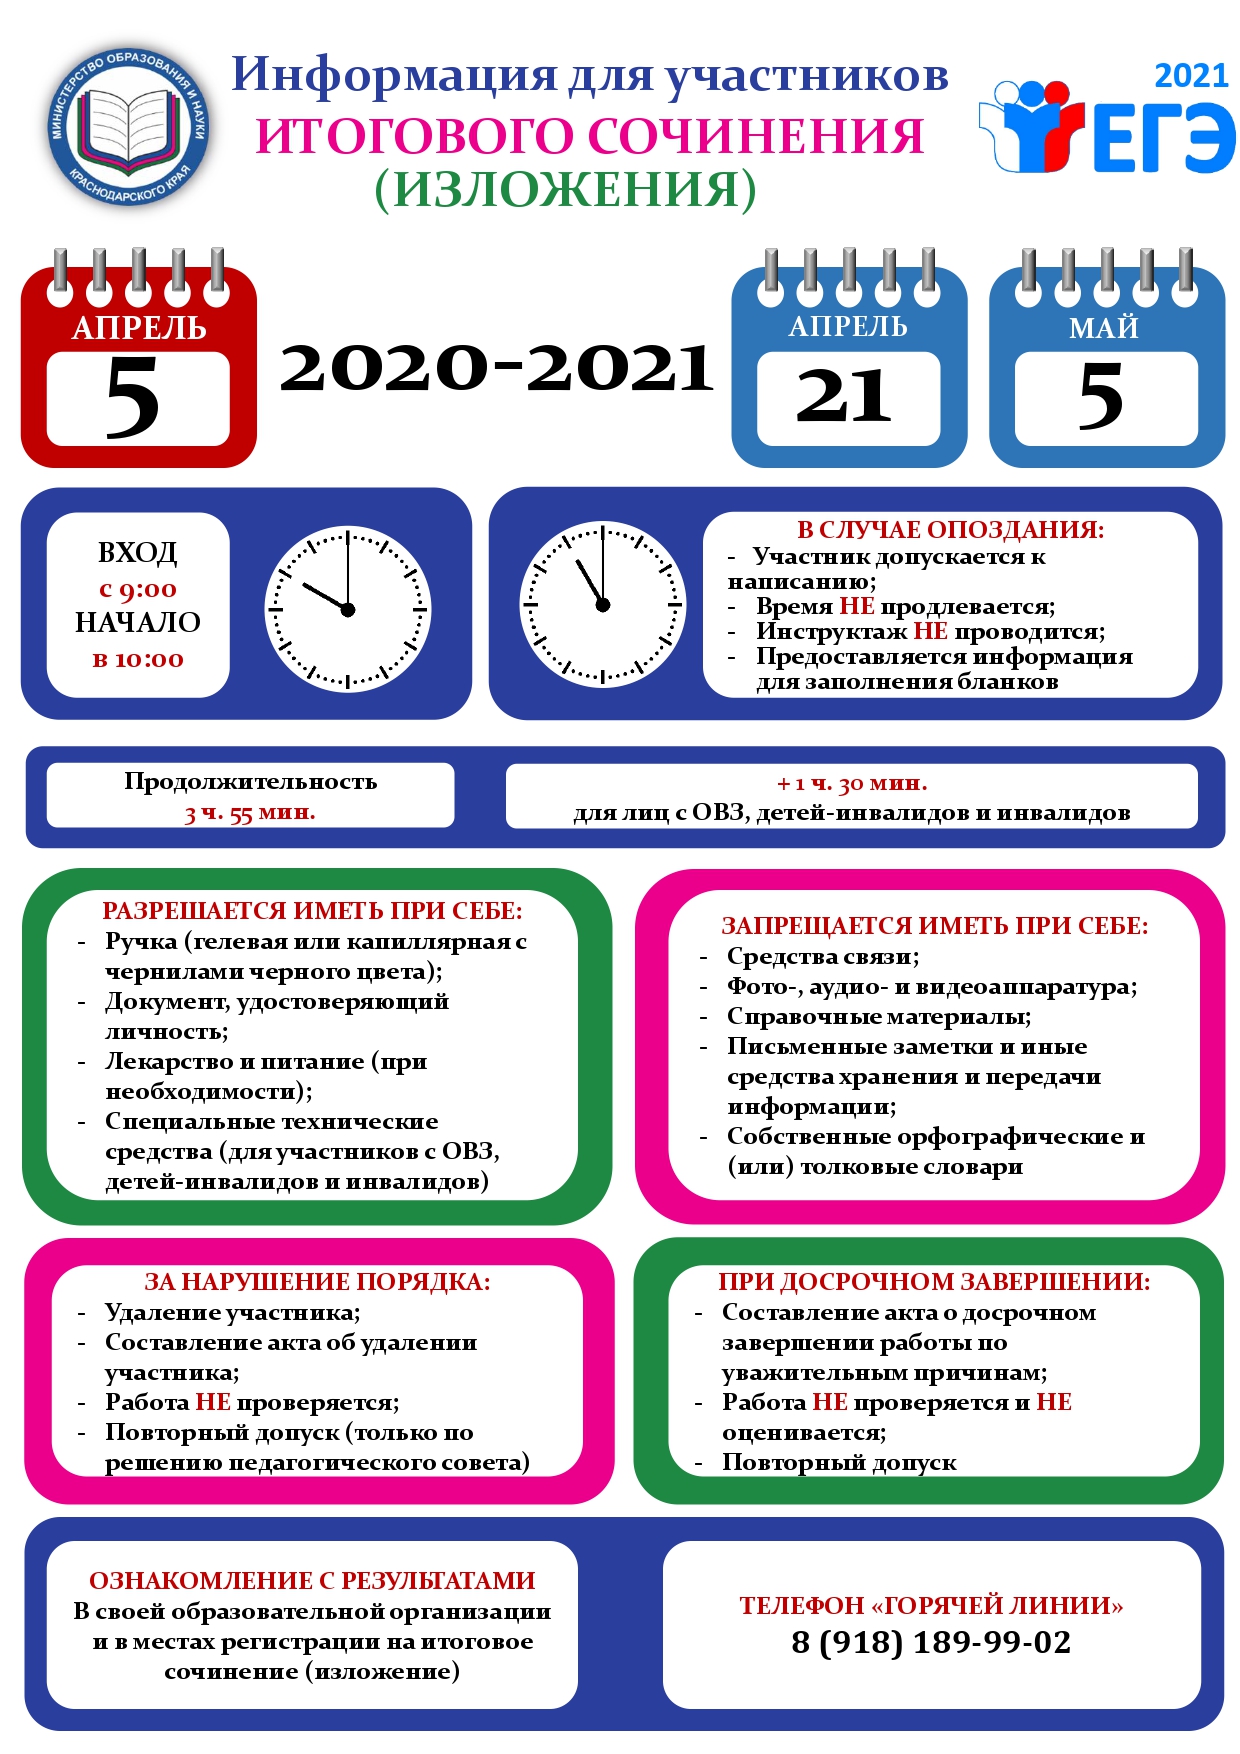 Структура Написания Итогового Сочинения 2022